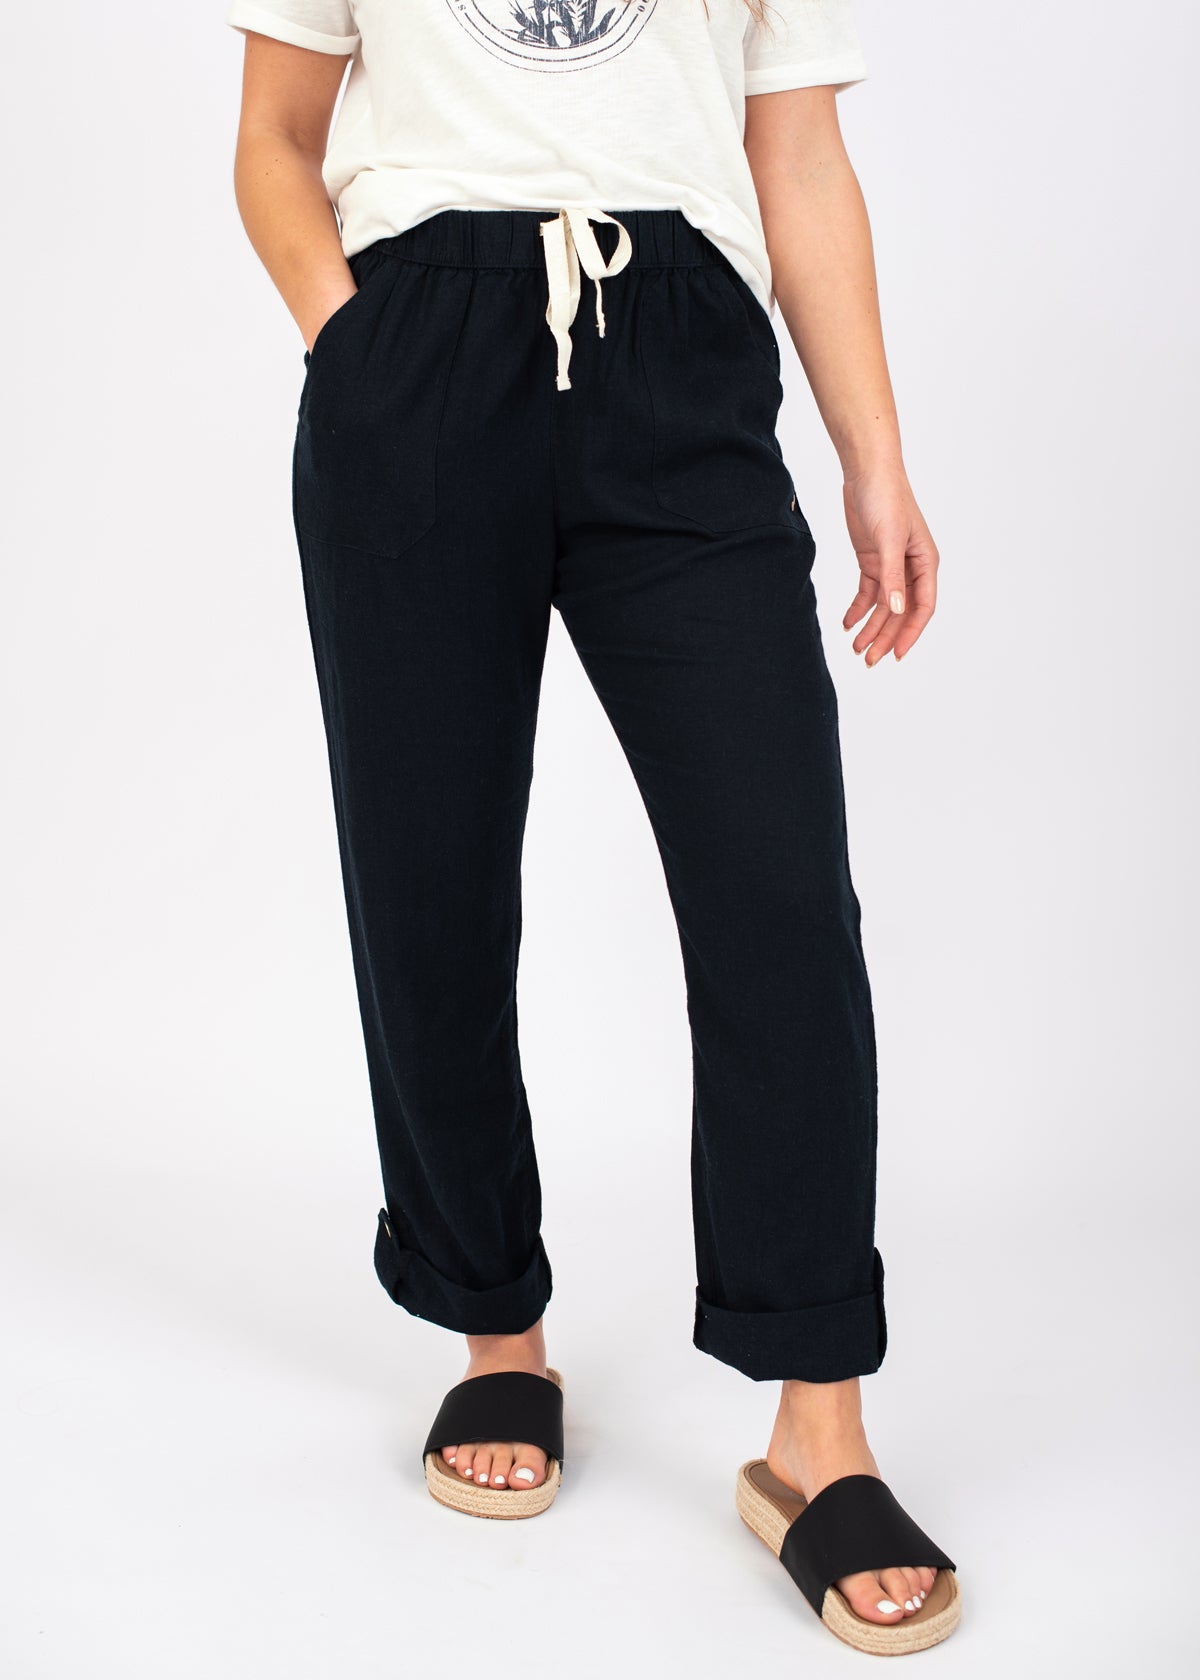 Roxy On The Seashore Linen Cargo Trousers - Casual Trousers Women's, Buy  online